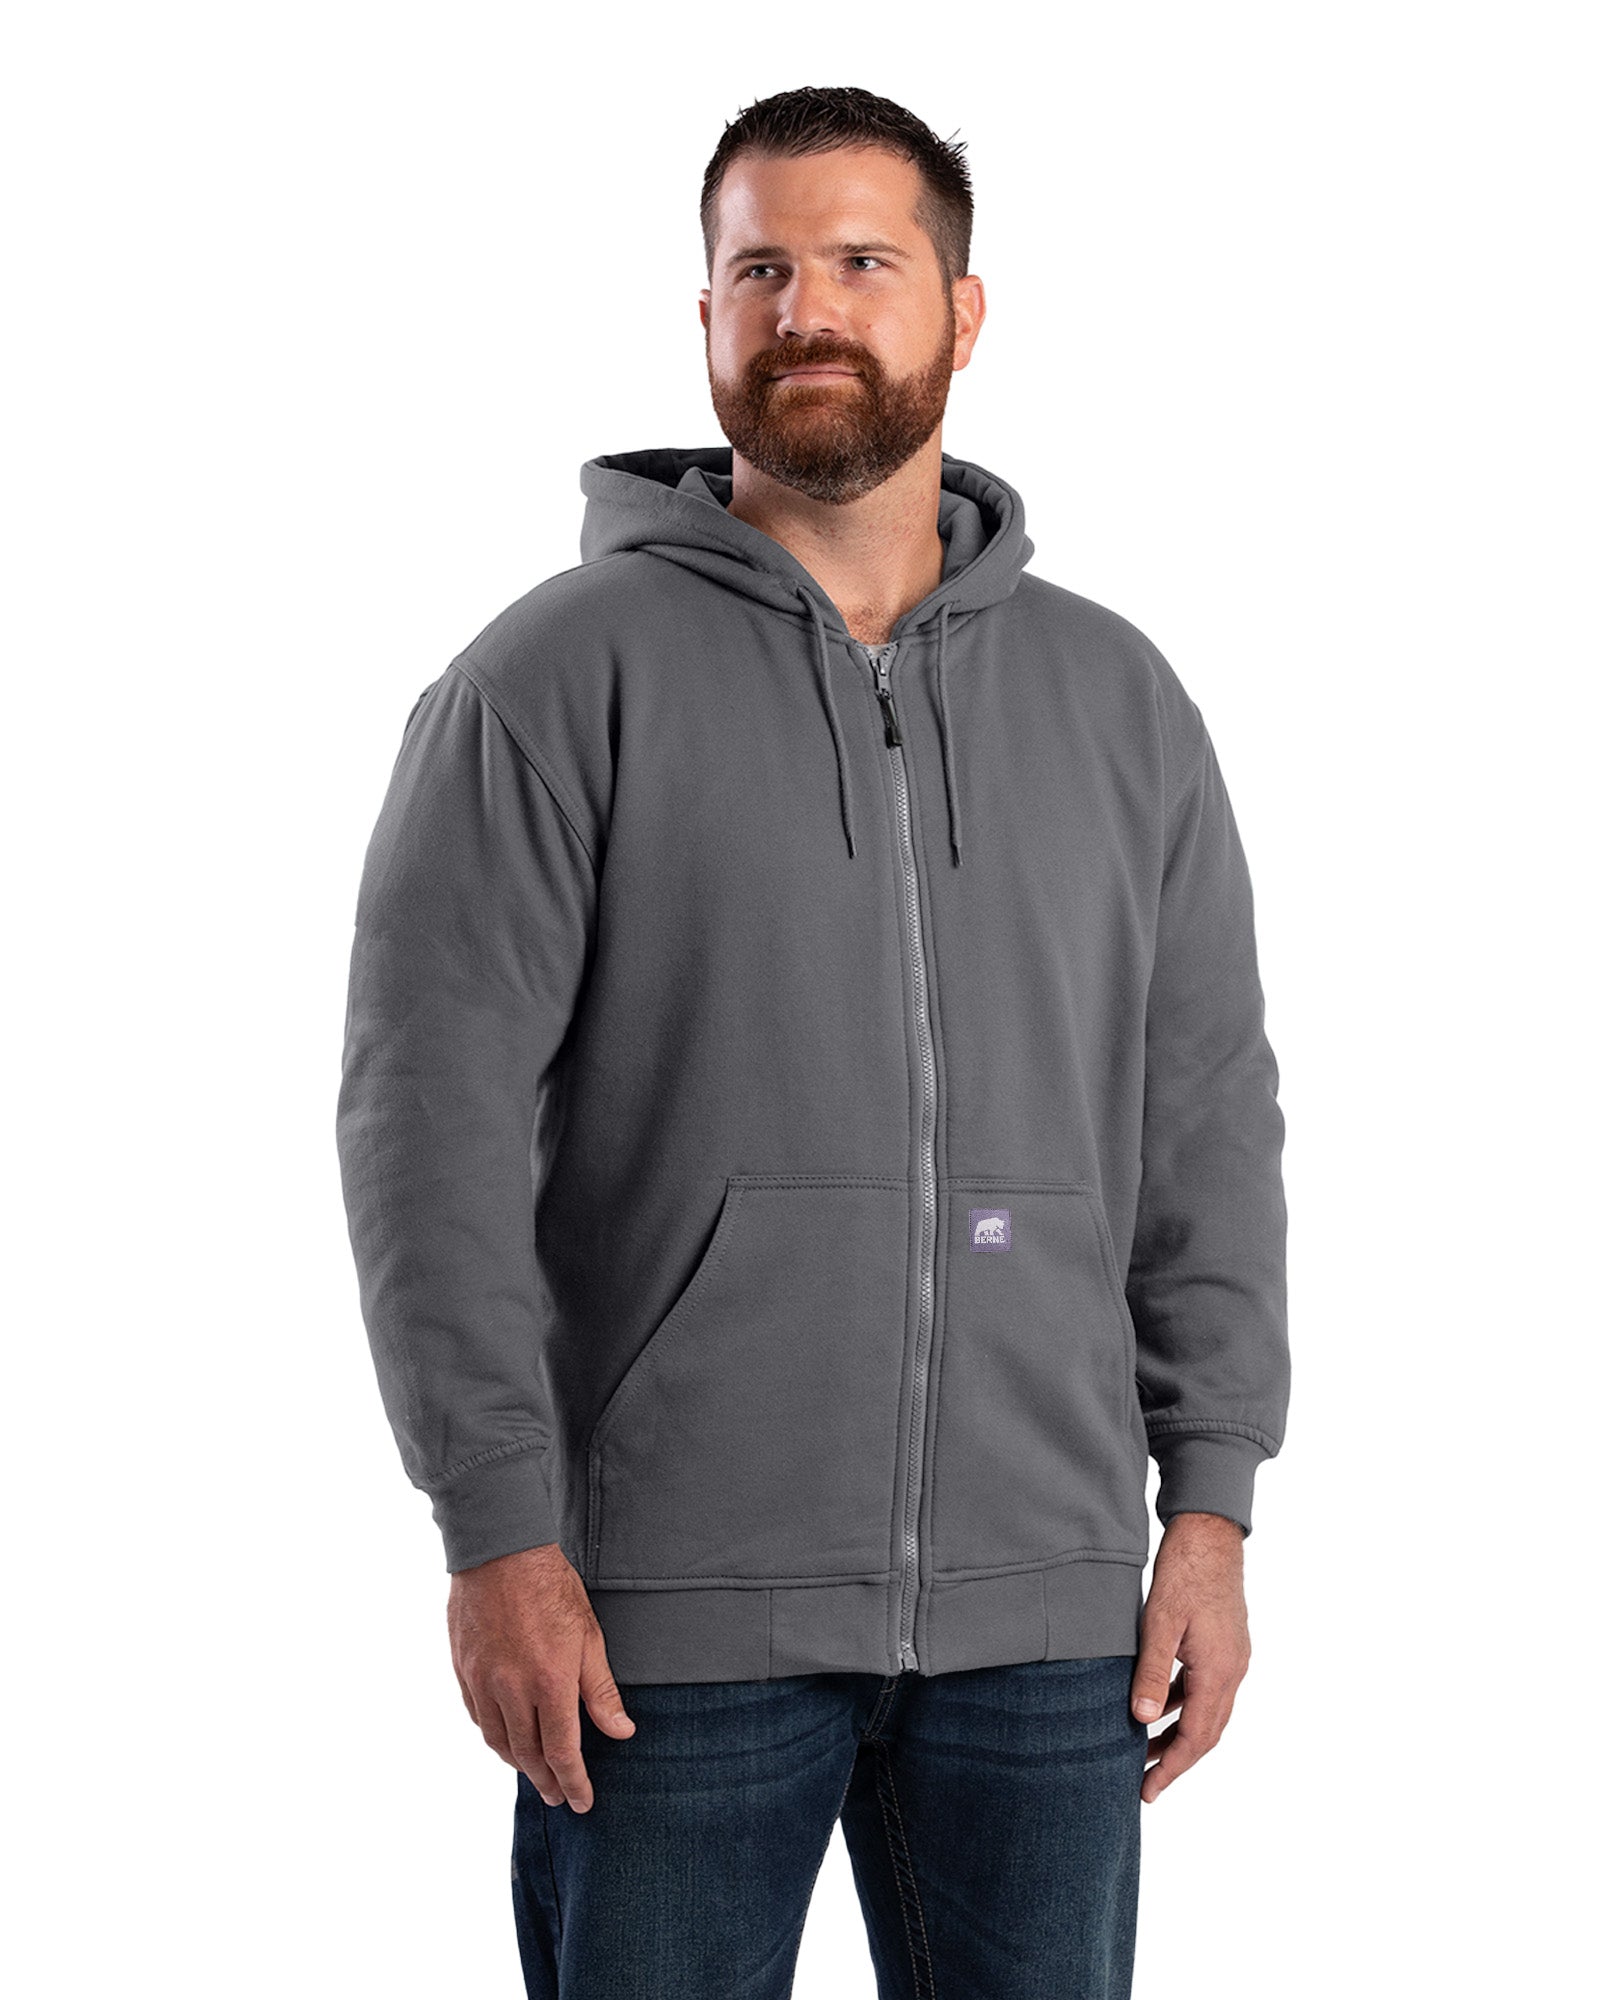 Berne Heritage Thermal-Lined Full-Zip Hooded Sweatshirt - Tall - Mens